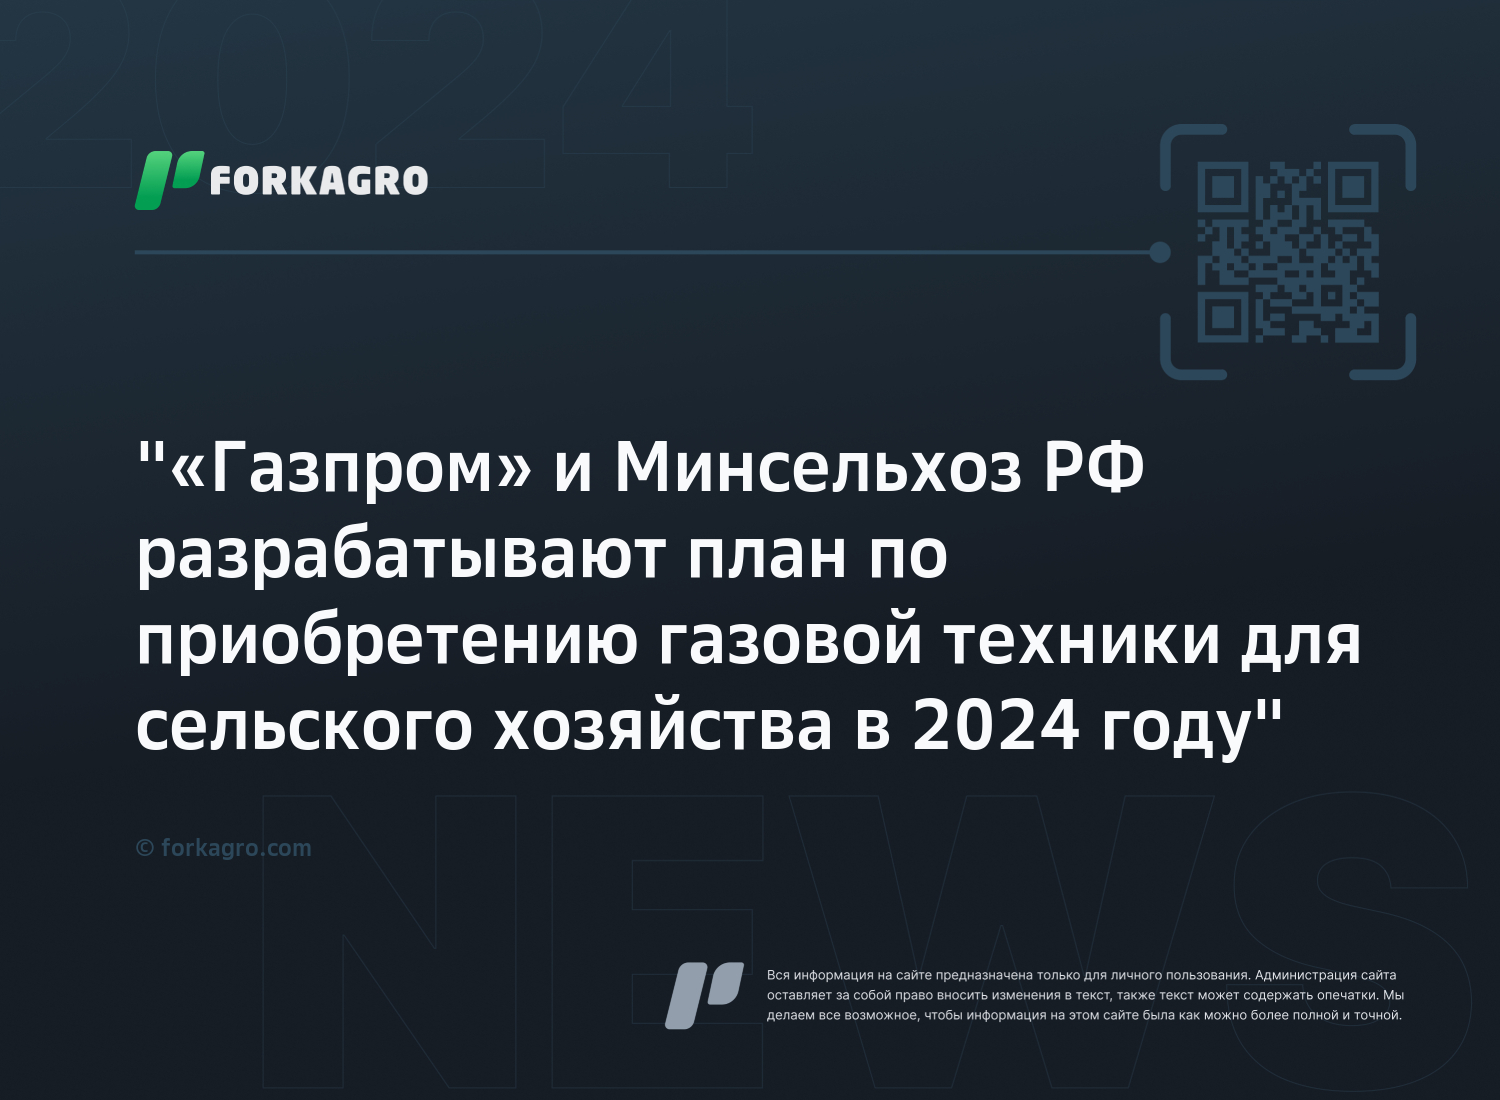 "«Газпром» и Минсельхоз РФ разрабатывают план по приобретению газовой техники для сельского хозяйства в 2024 году"